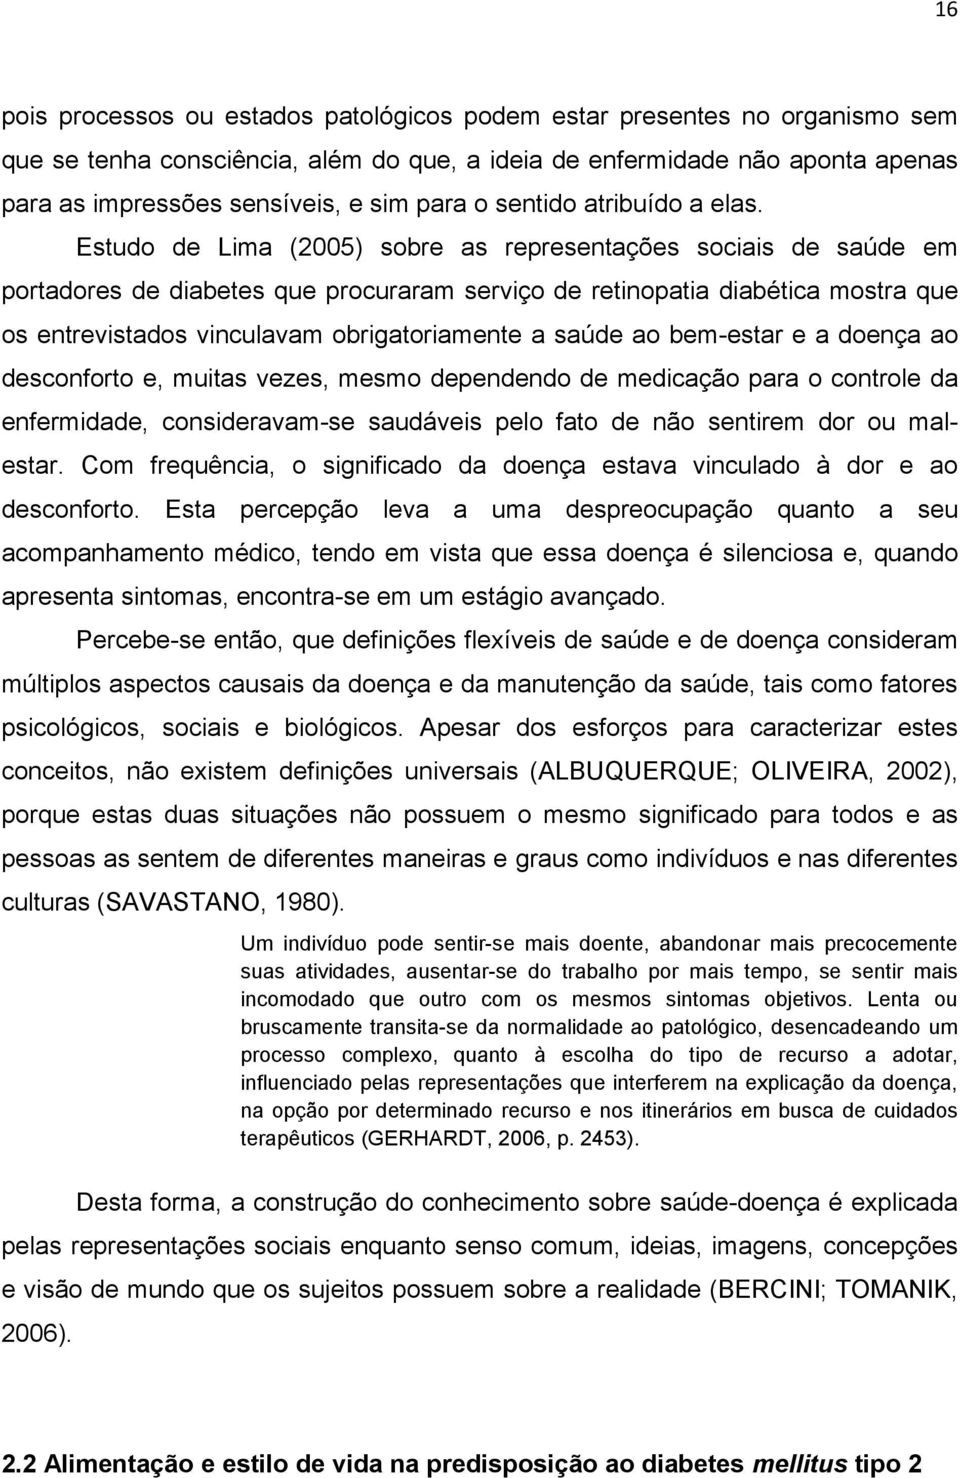 Estudo de Lima (2005) sobre as representações sociais de saúde em portadores de diabetes que procuraram serviço de retinopatia diabética mostra que os entrevistados vinculavam obrigatoriamente a